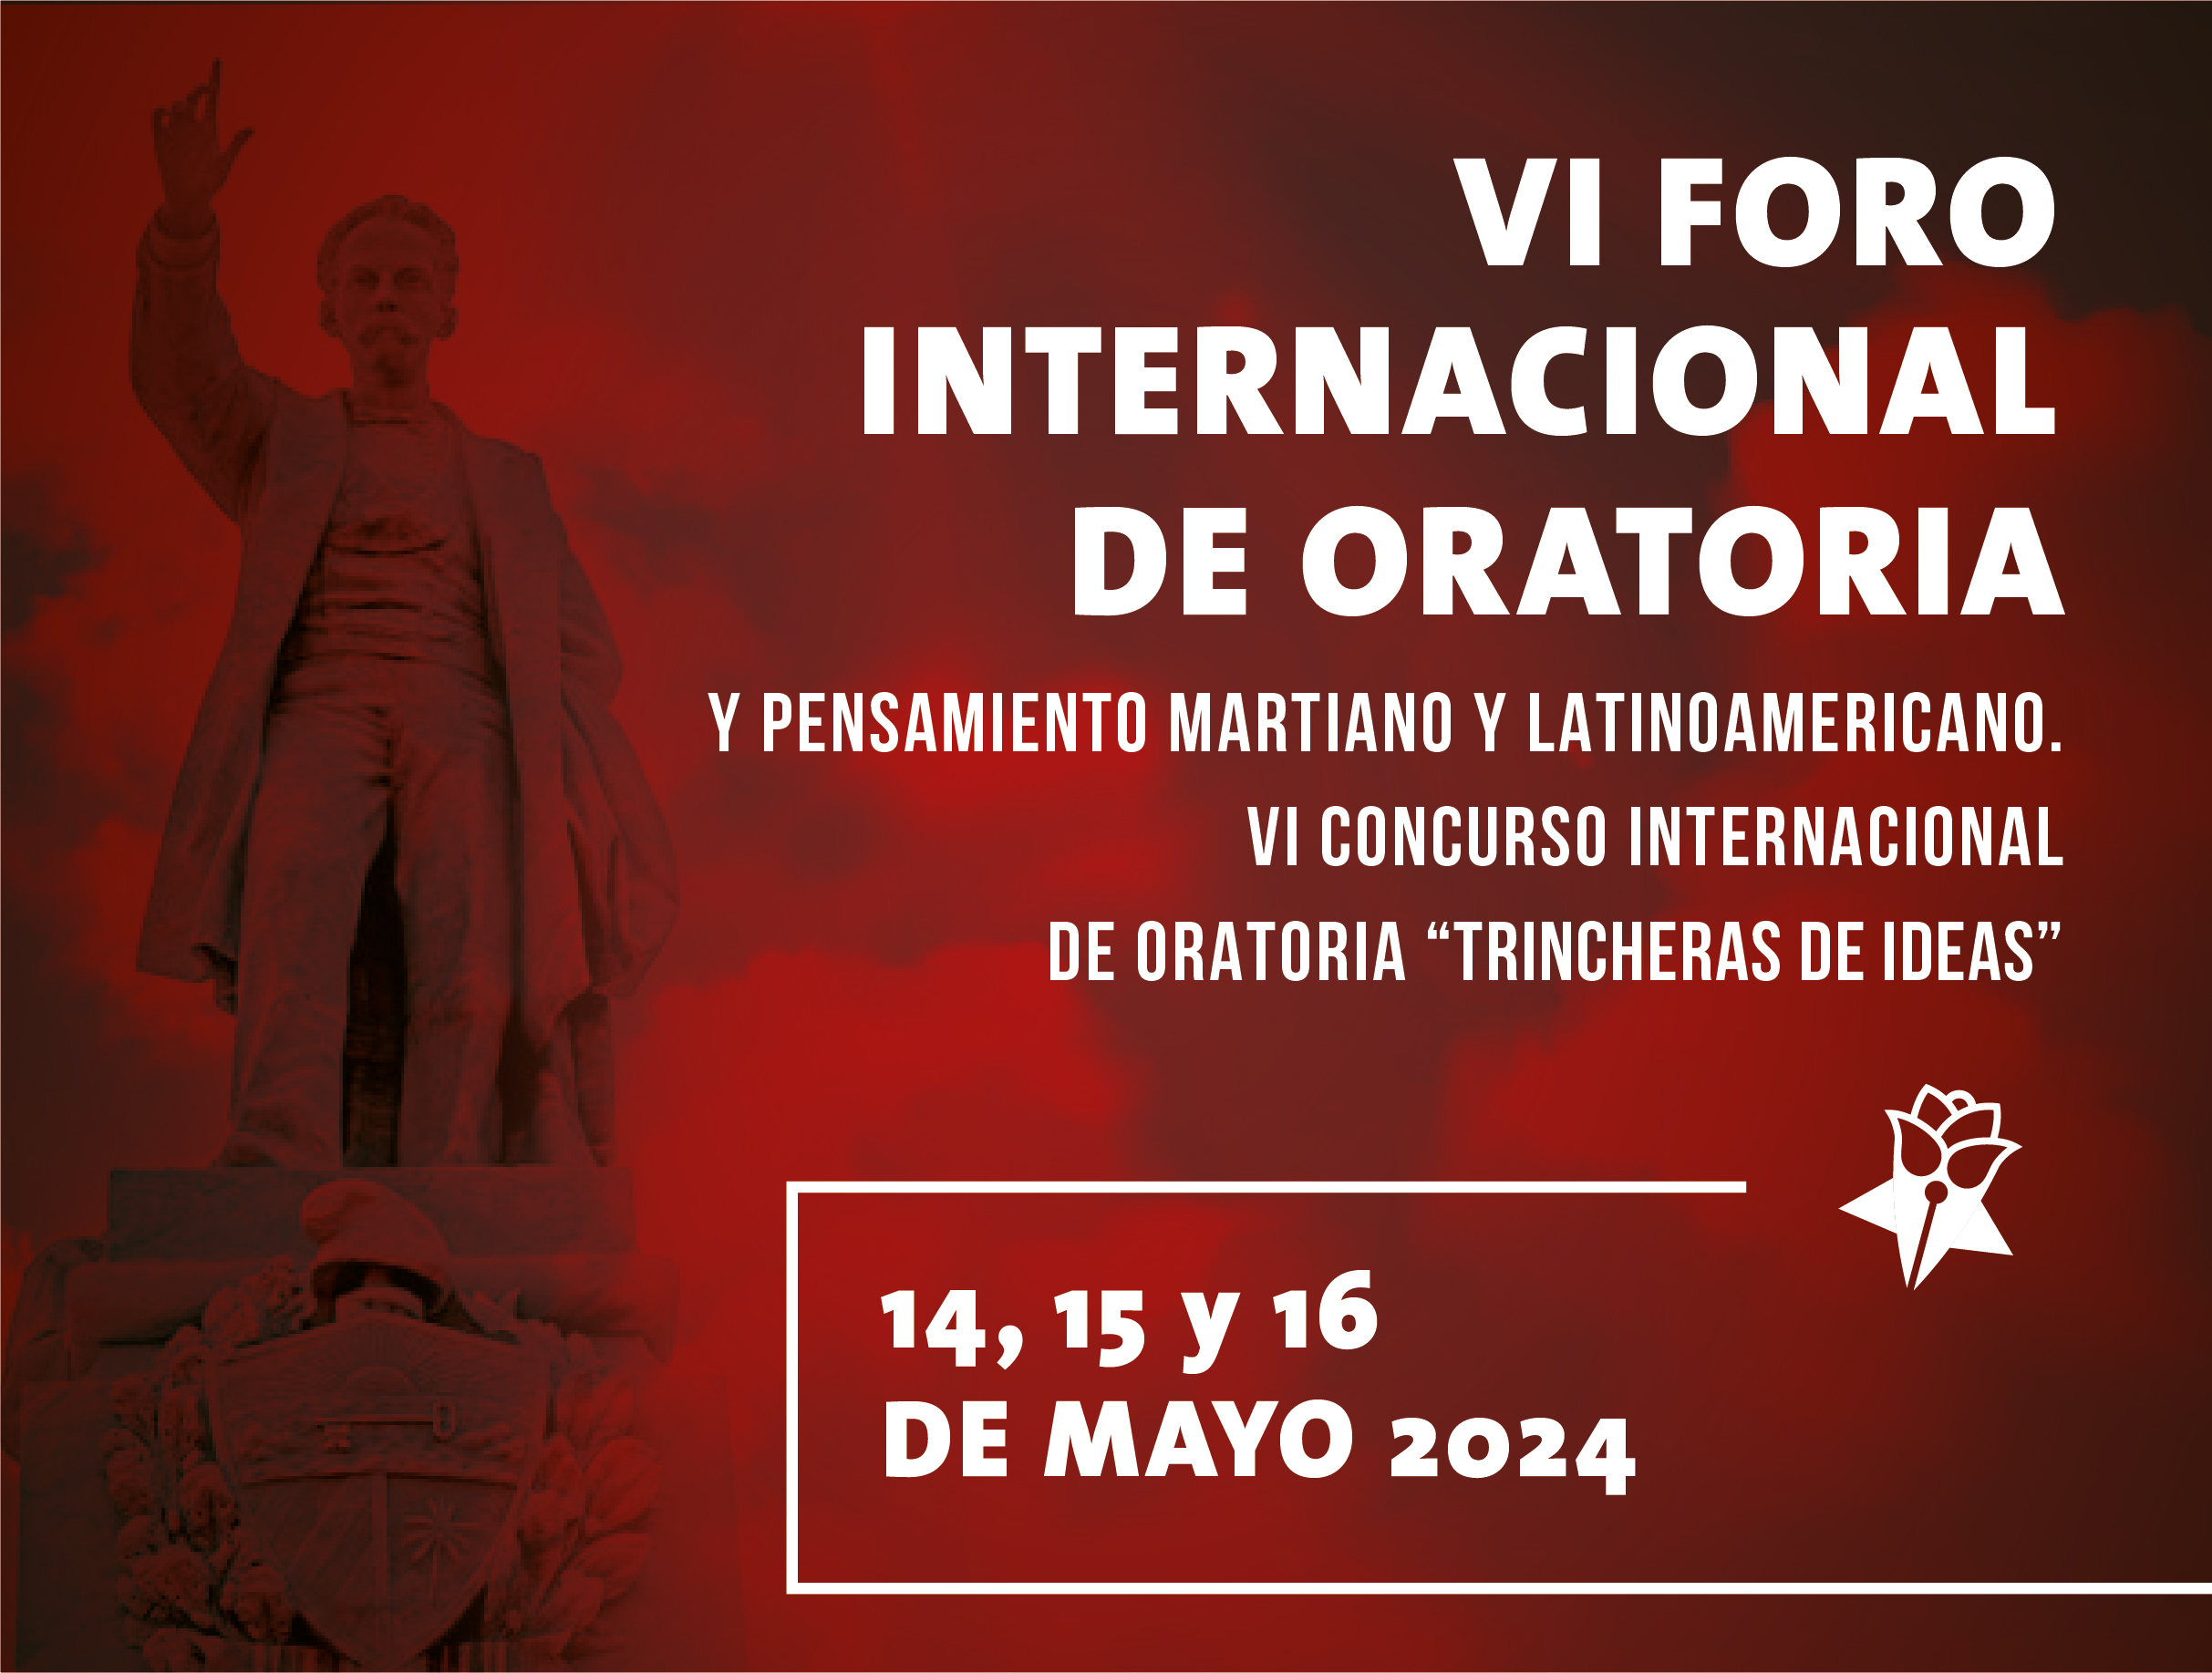 Evento - VI Foro Internacional de Oratoria, Pensamiento Martiano y Latinoamericano y VI Concurso Internacional de Oratoria “Trincheras de Ideas 2024”